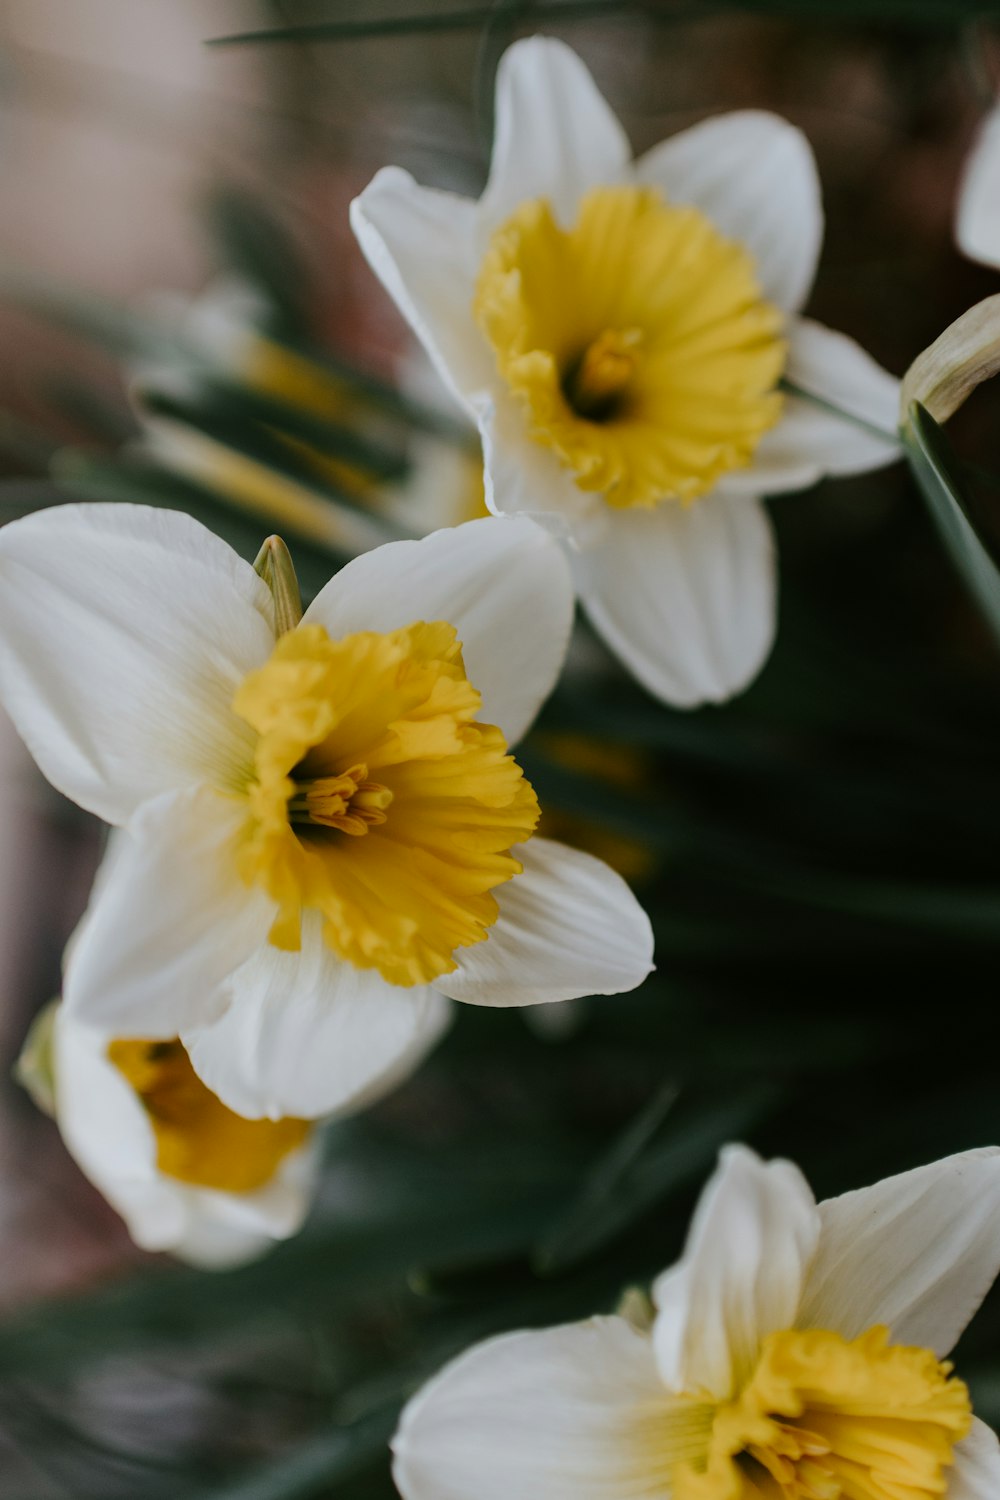 틸트 시프트 렌즈의 흰색과 노란색 꽃